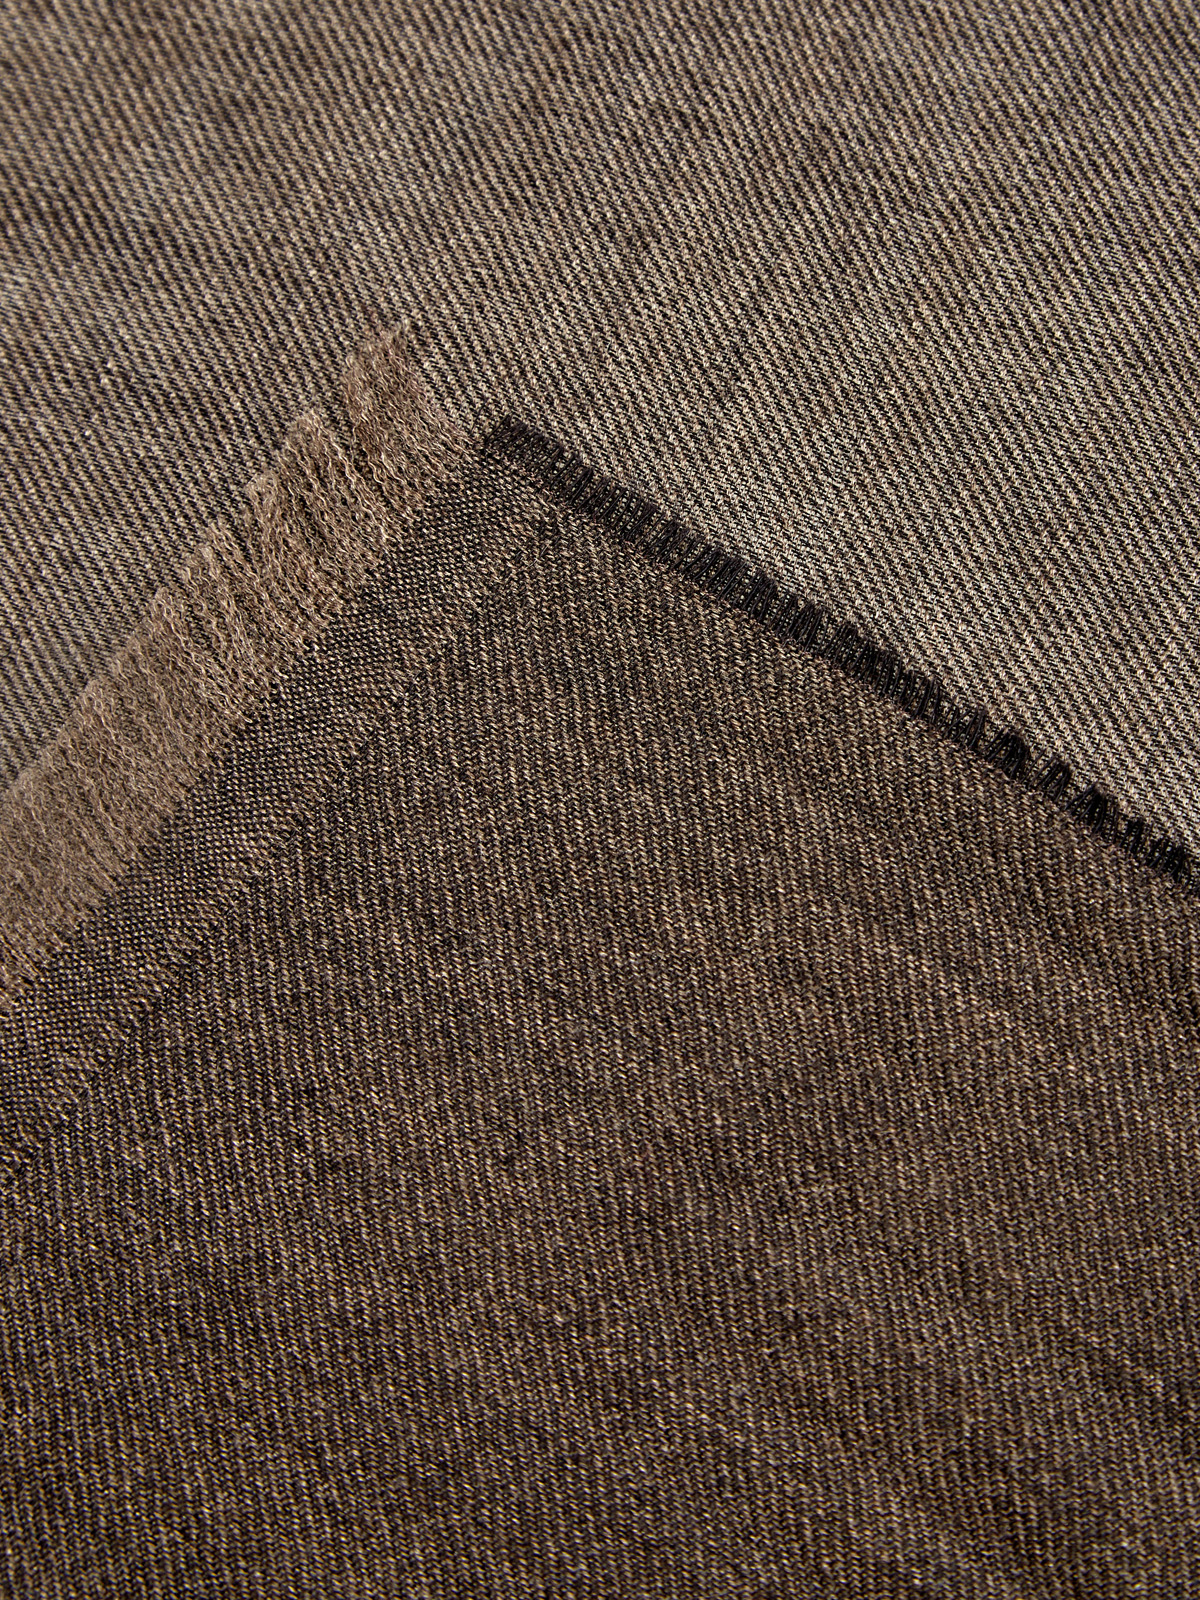 Кашемировый шарф с волокнами шелка в коричневой гамме BERTOLO CASHMERE, цвет коричневый, размер 58 - фото 2